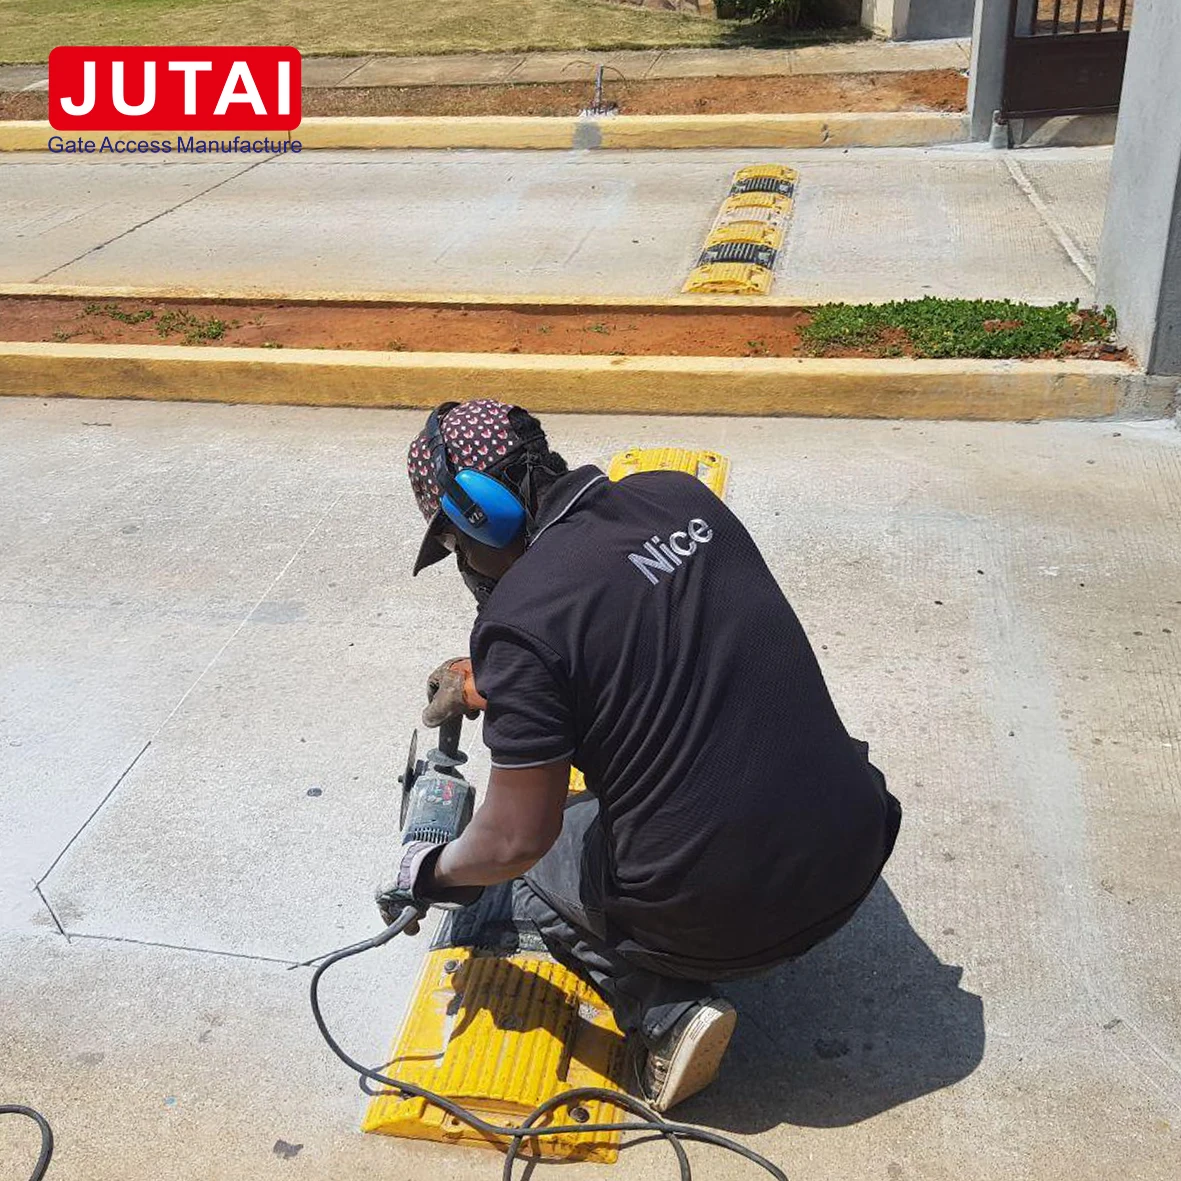 RFID -Reader für Langstrecken -Zugangskontrolle für Jutai GP99